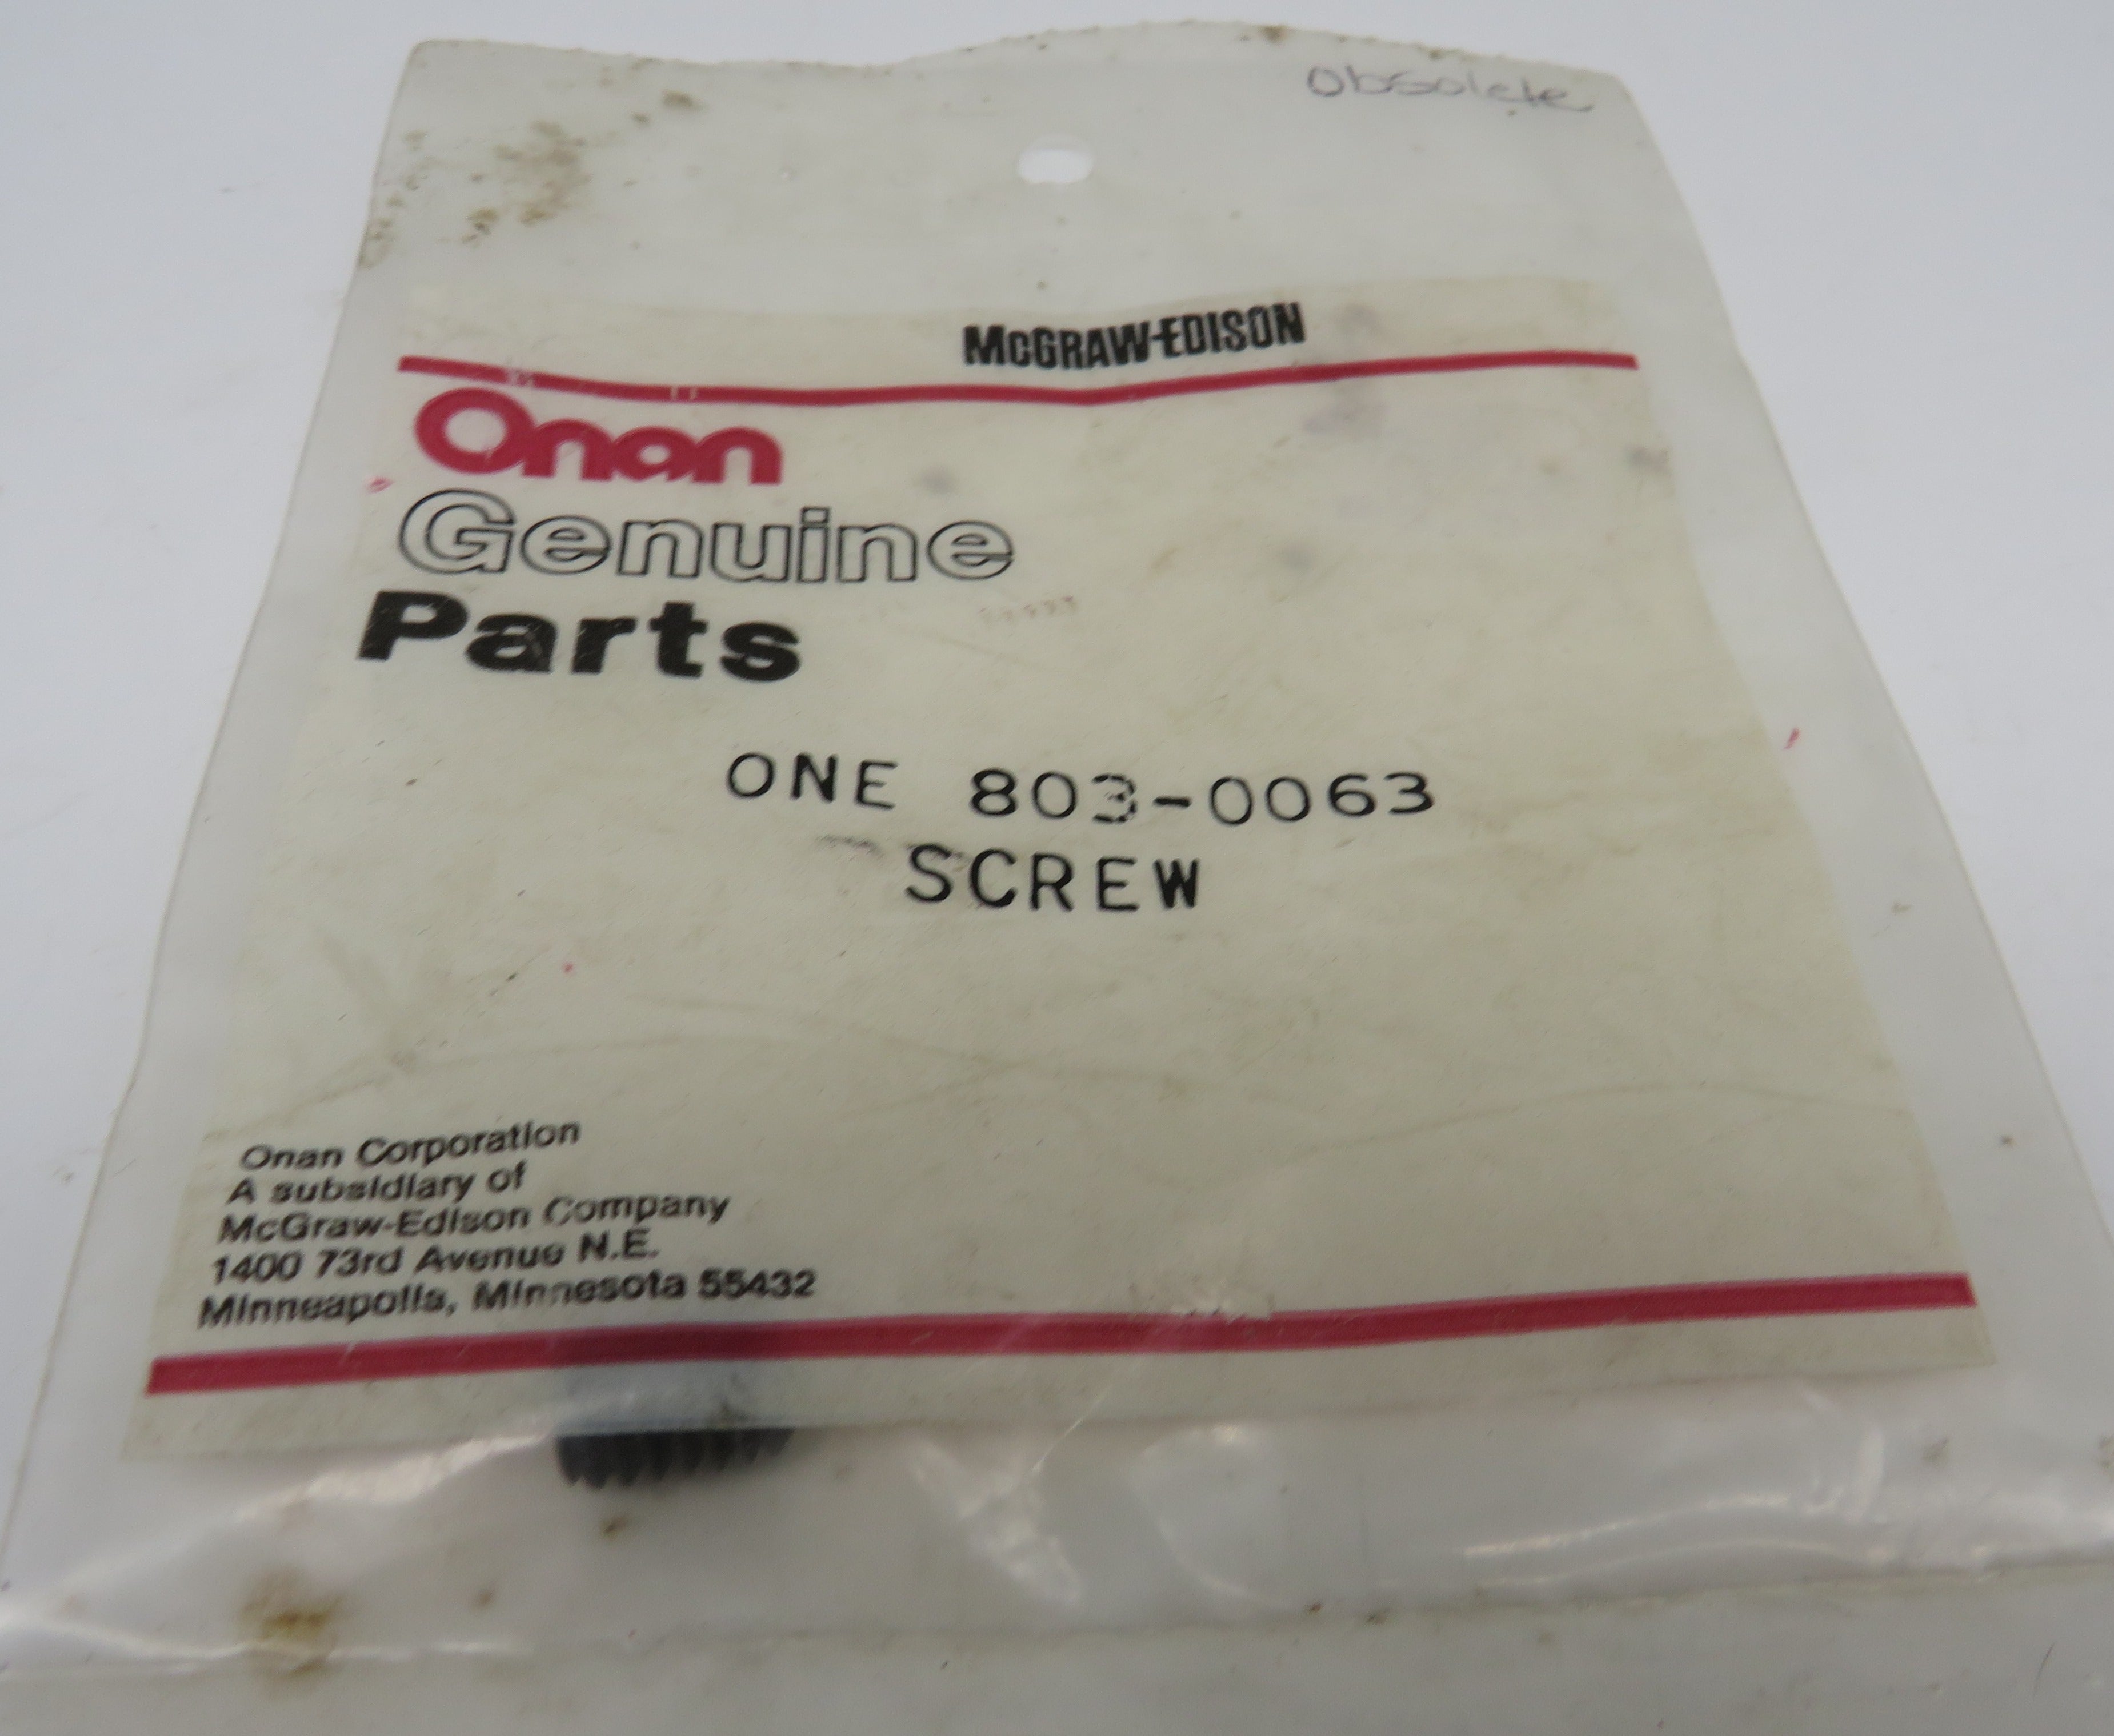 803-0063 Onan Screw (OBSOLETE) Socket Set 1/4-20 x 1/2